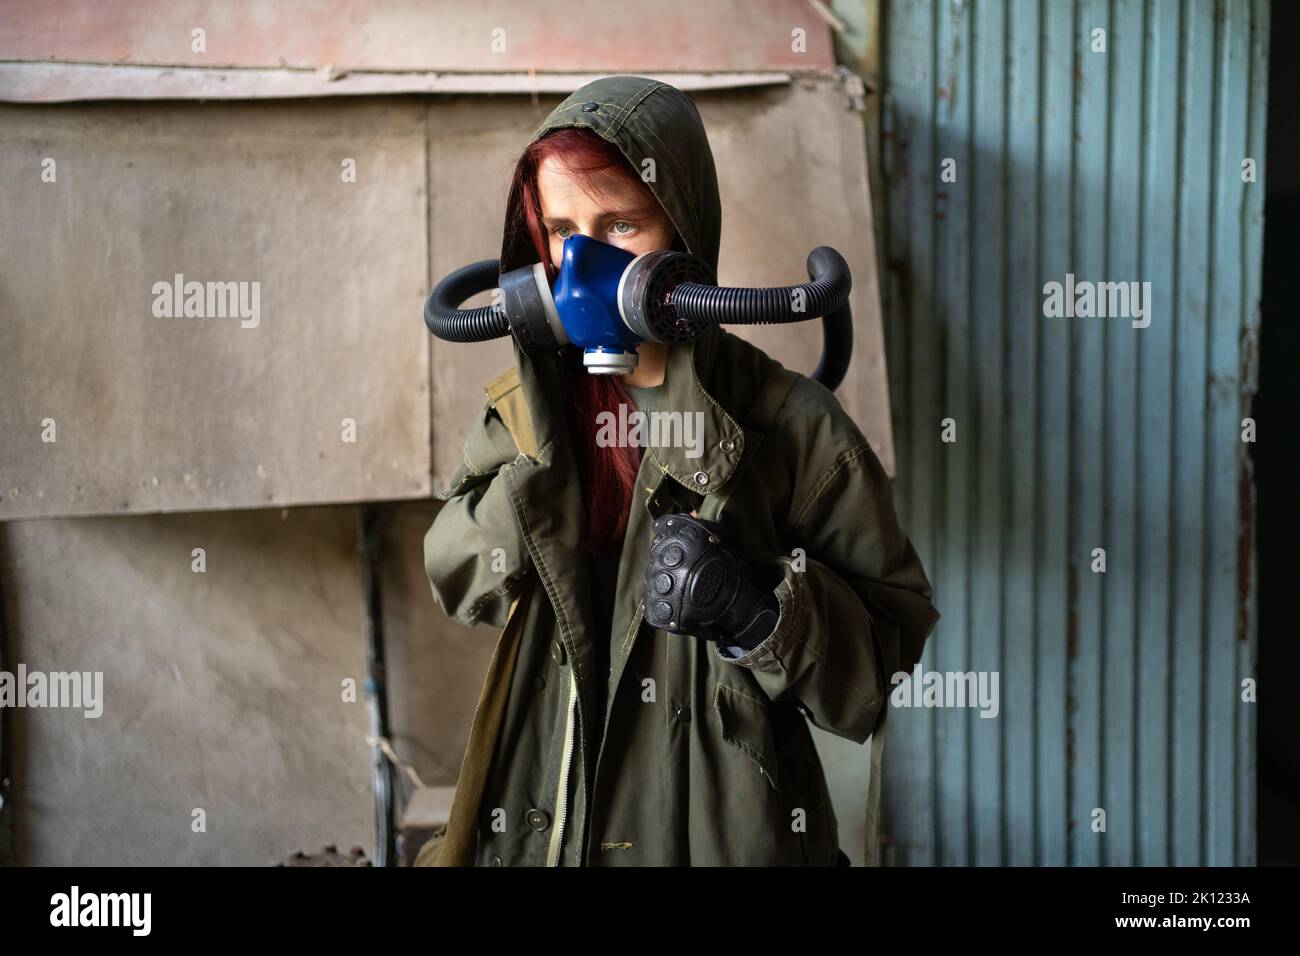 Sopravvivenza femminile post-apocalisse in maschera a gas su sfondo parete. Foto Stock